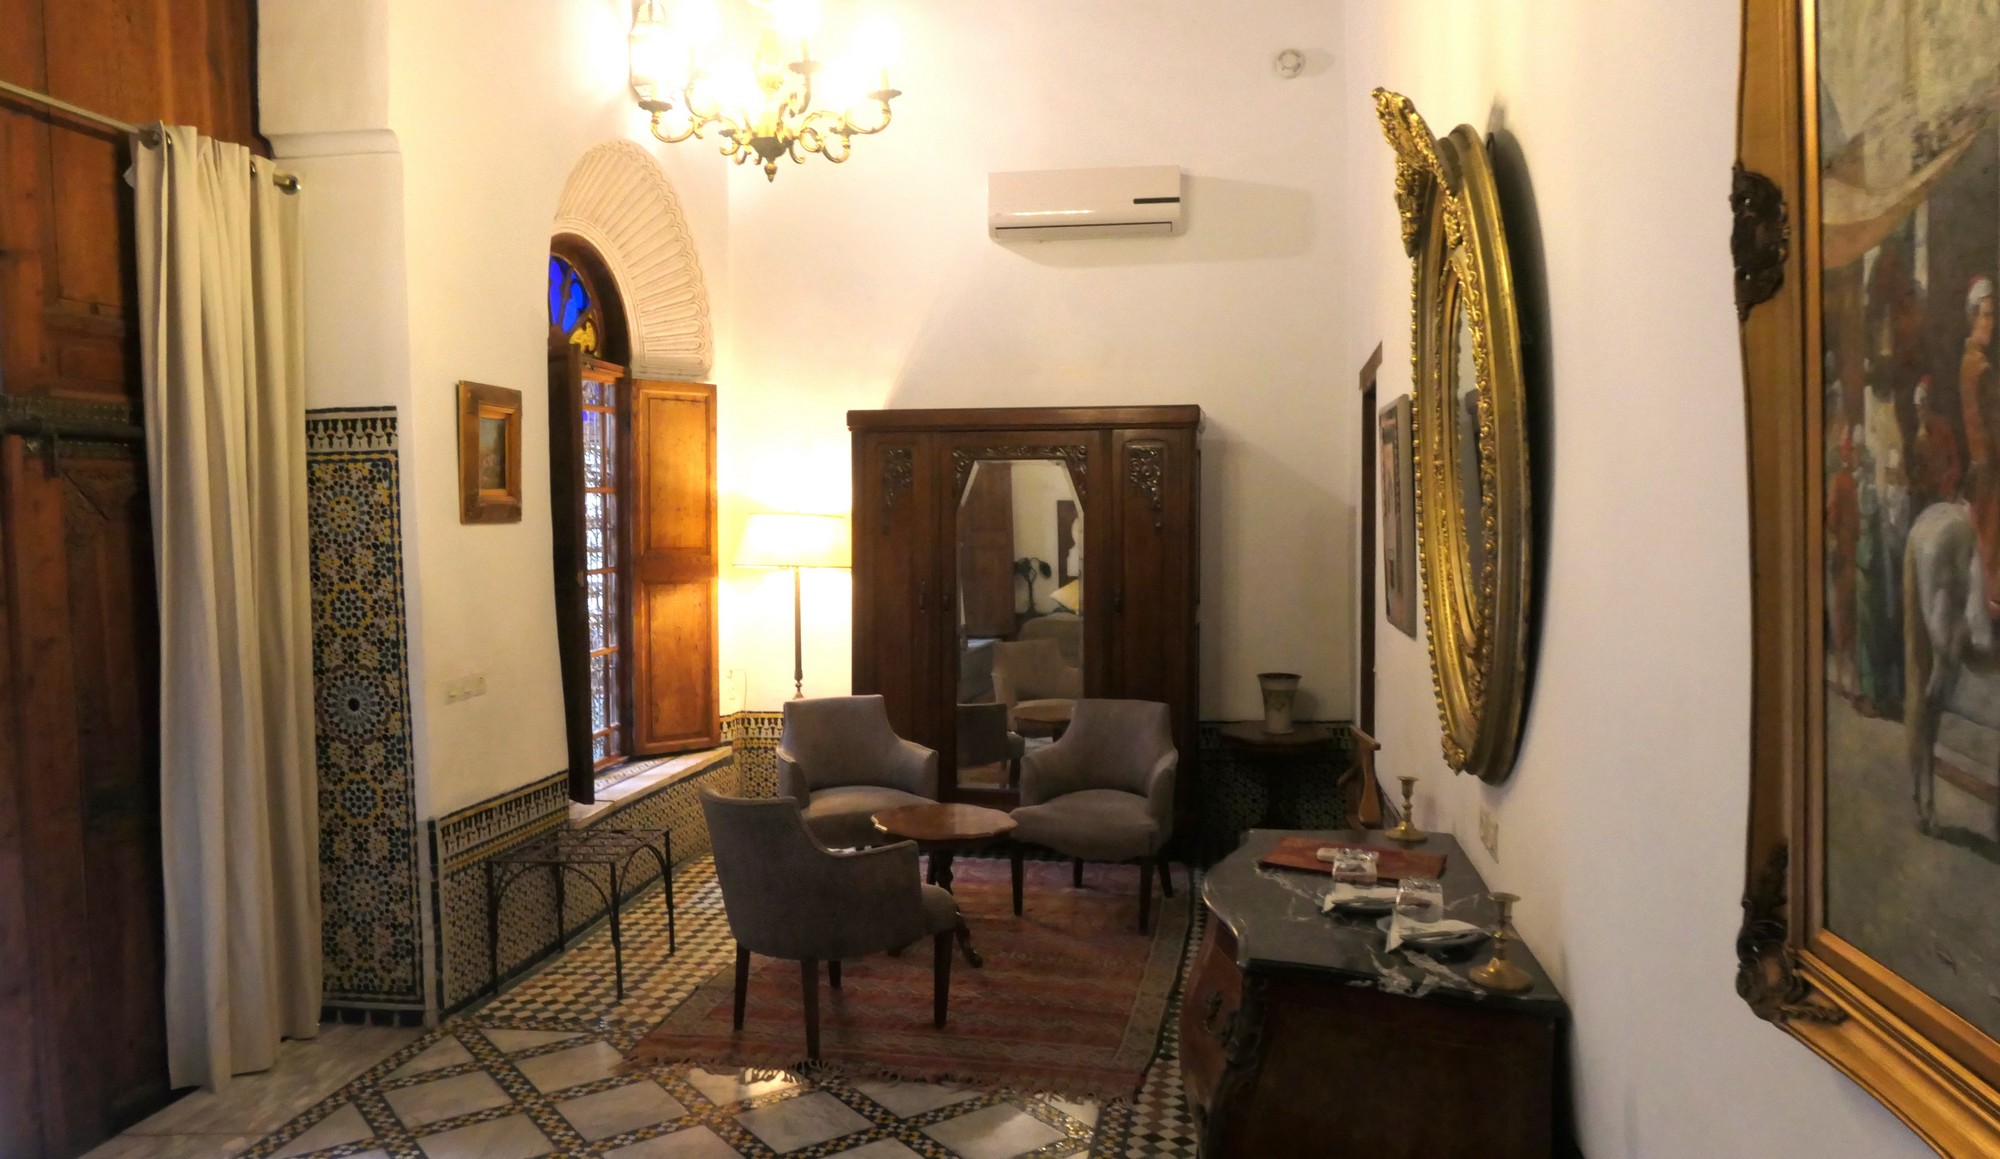 El Bali suite - salon